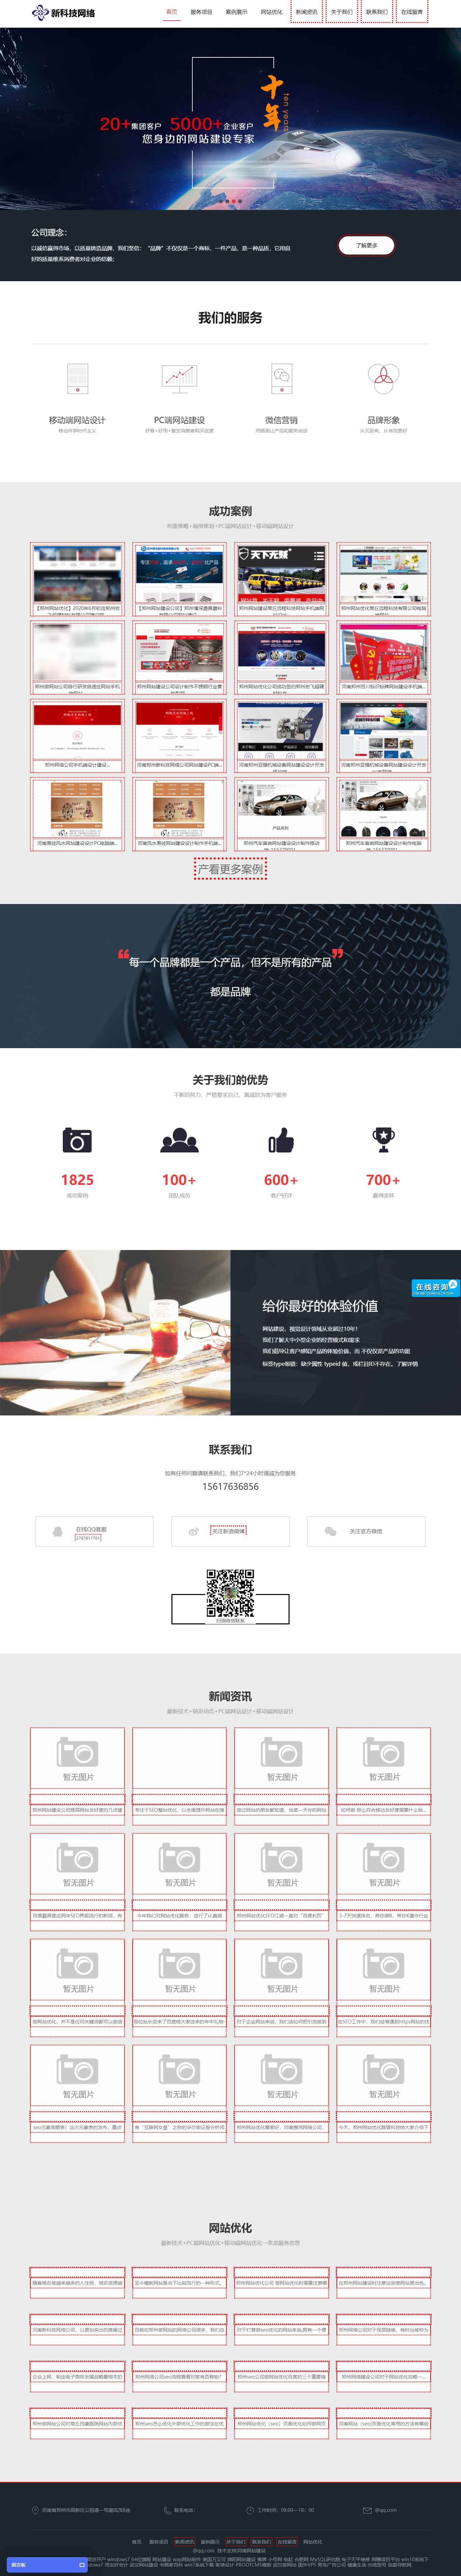 鄭州網絡公司響應式網站設計制作(圖1)